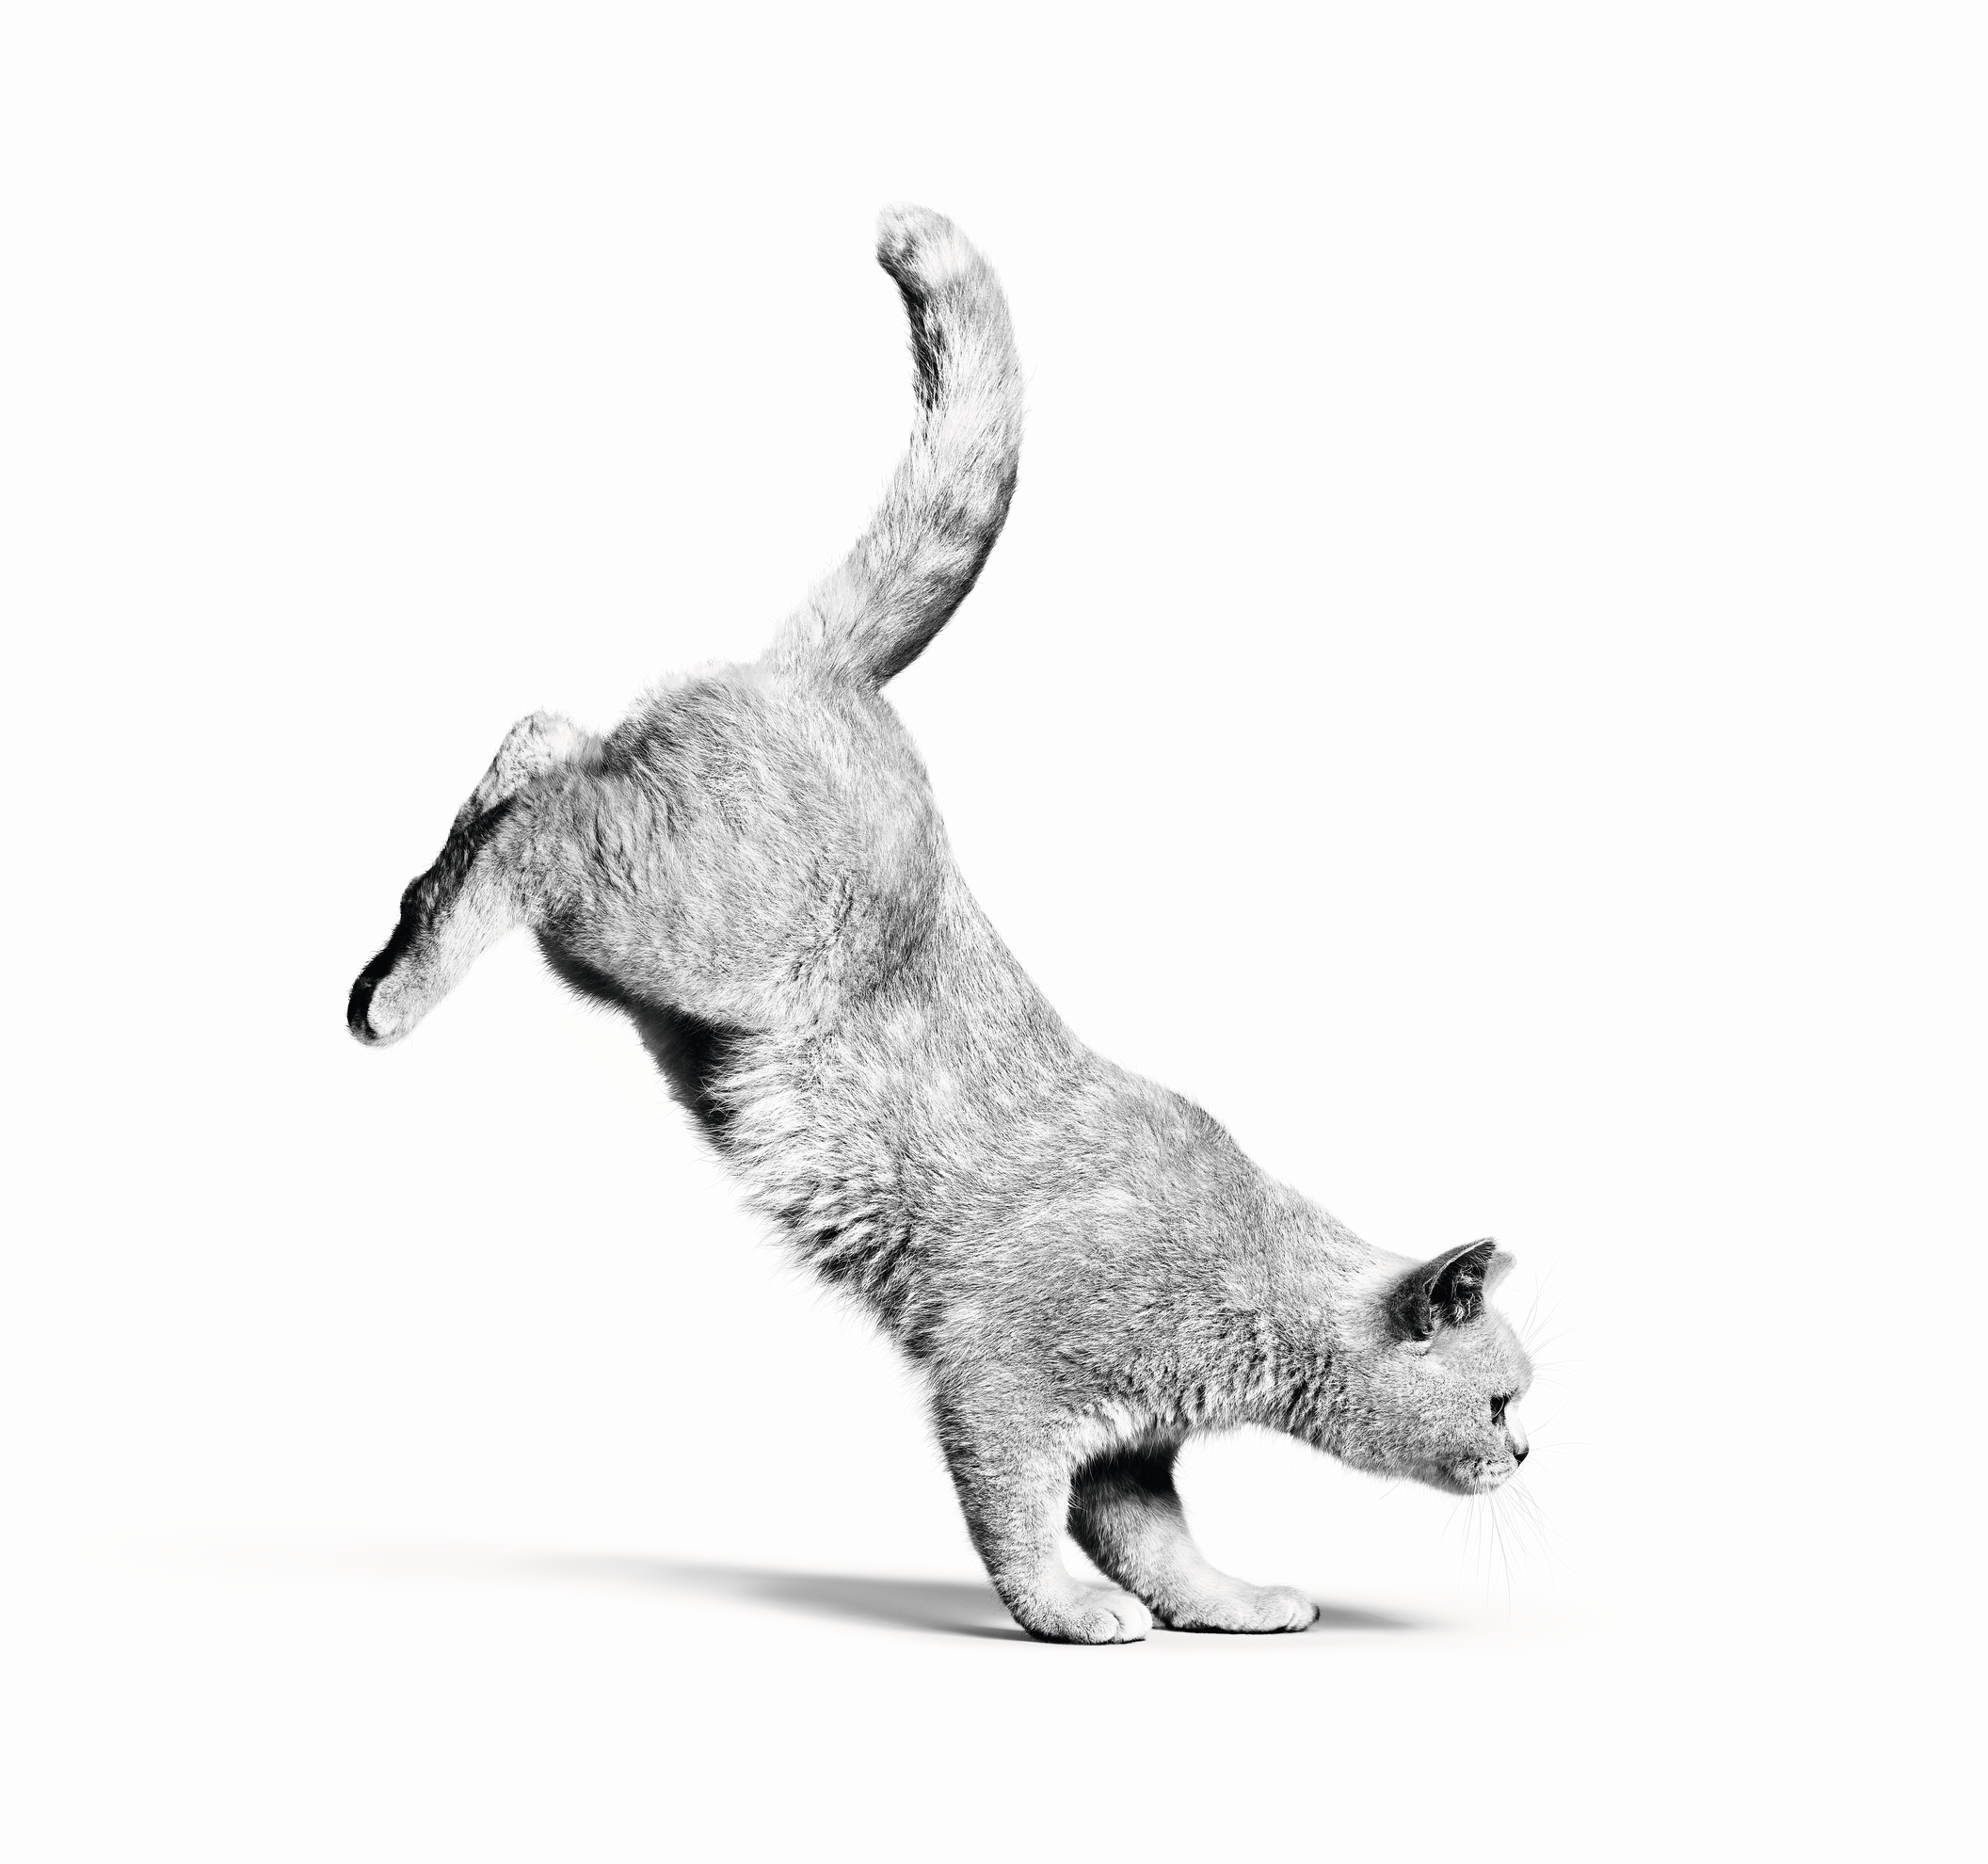 Britanico de pelo corto adulto saltando en blanco y negro sobre un fondo blanco